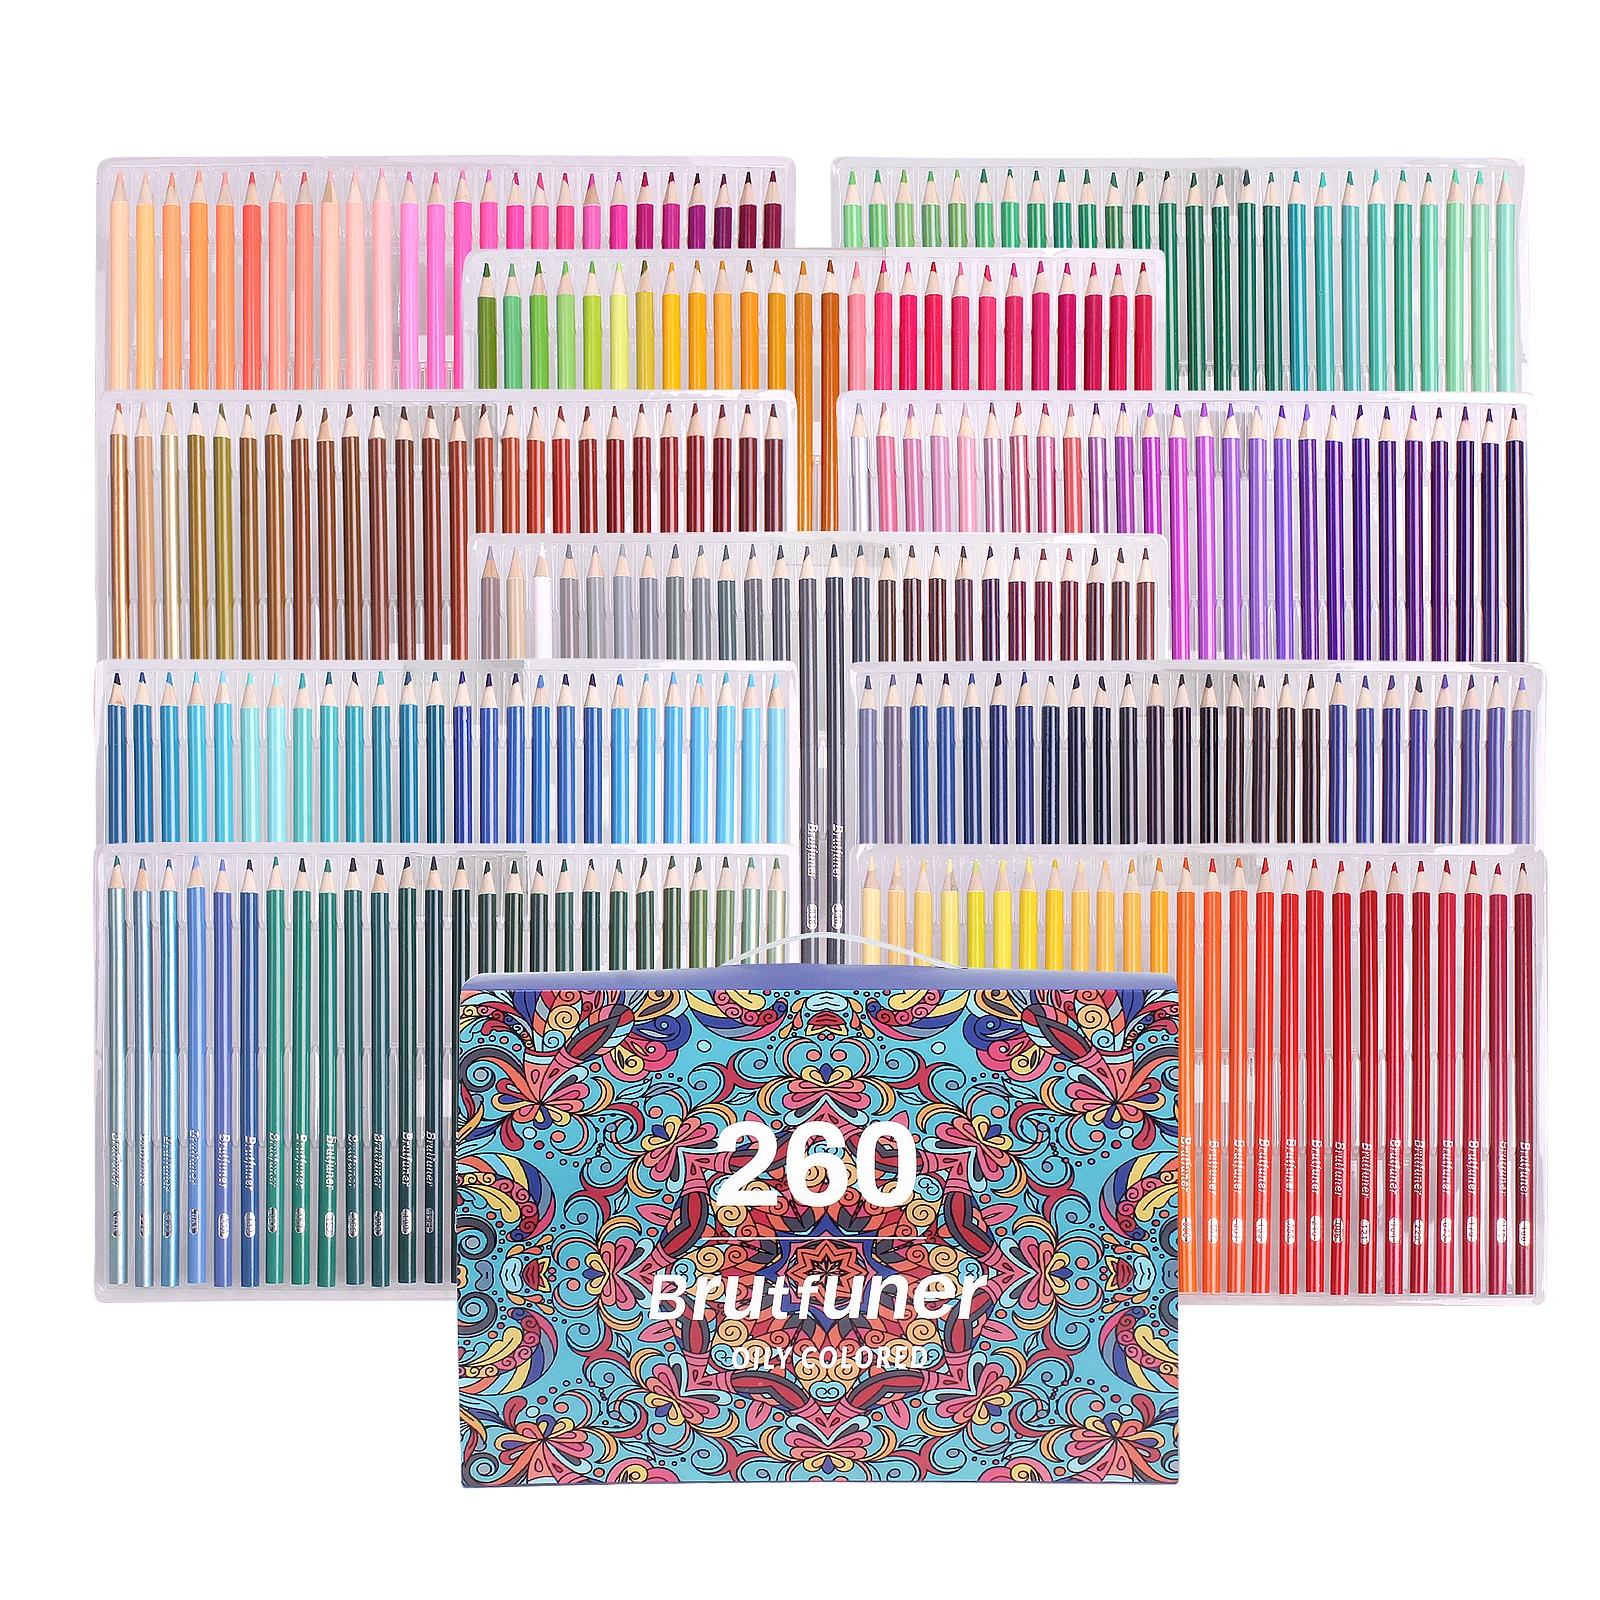 

260 цветные карандаши, Набор цветных карандашей, профессиональные цветные карандаши для художников, для детей и взрослых, цветные эскизы и ри...